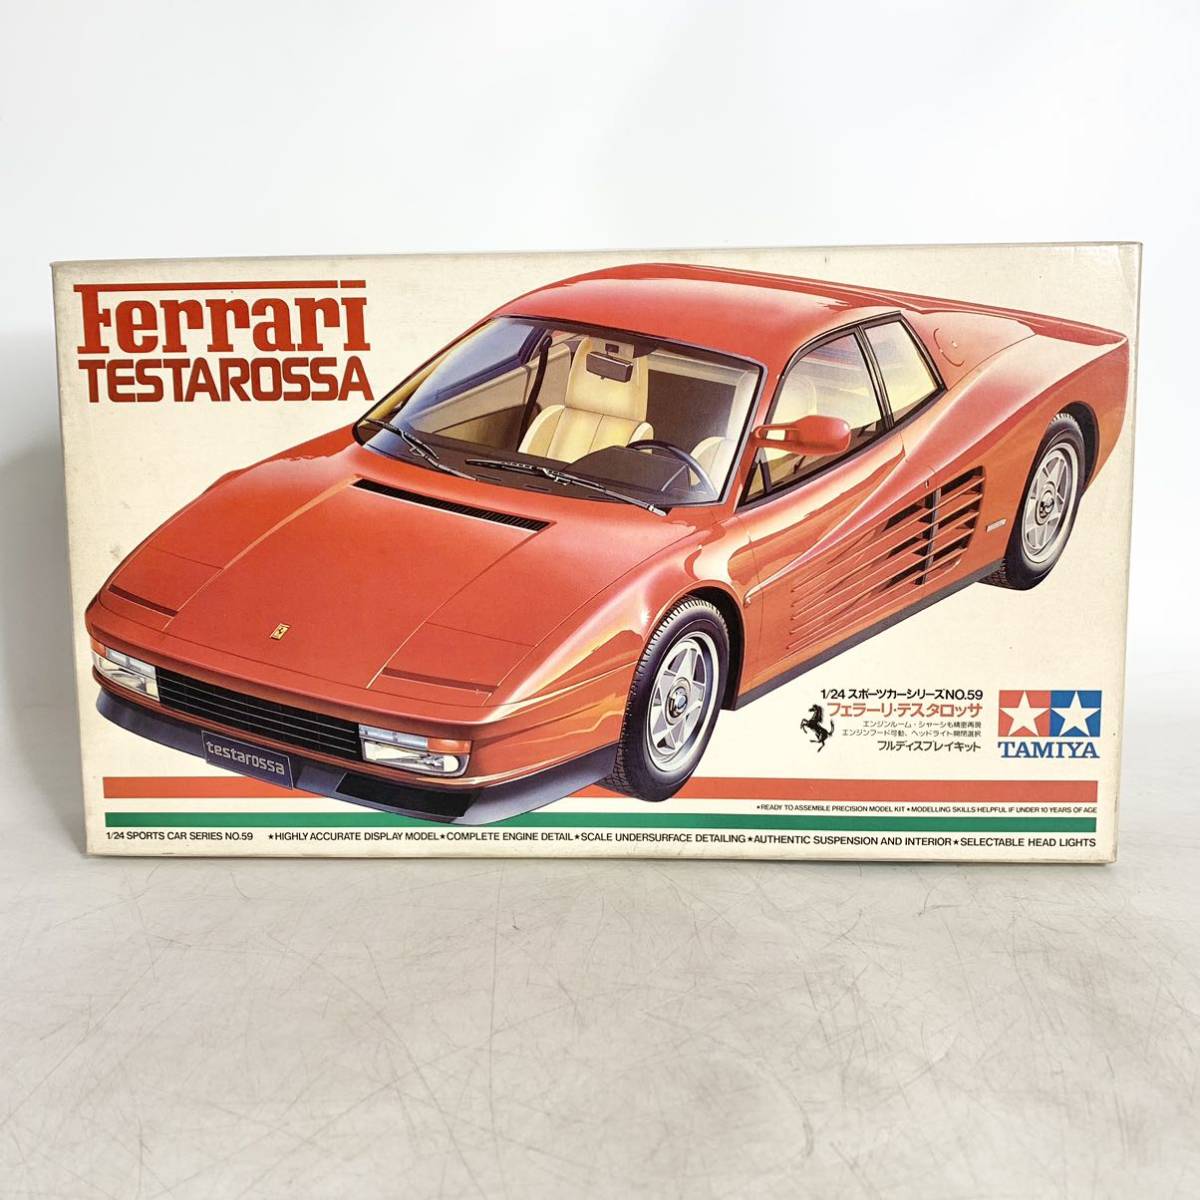 未組立 タミヤ 1/24 フェラーリ テスタロッサ Ferrari TESTAROSSA フルディスプレイキット プラモデル TAMIYA 2459